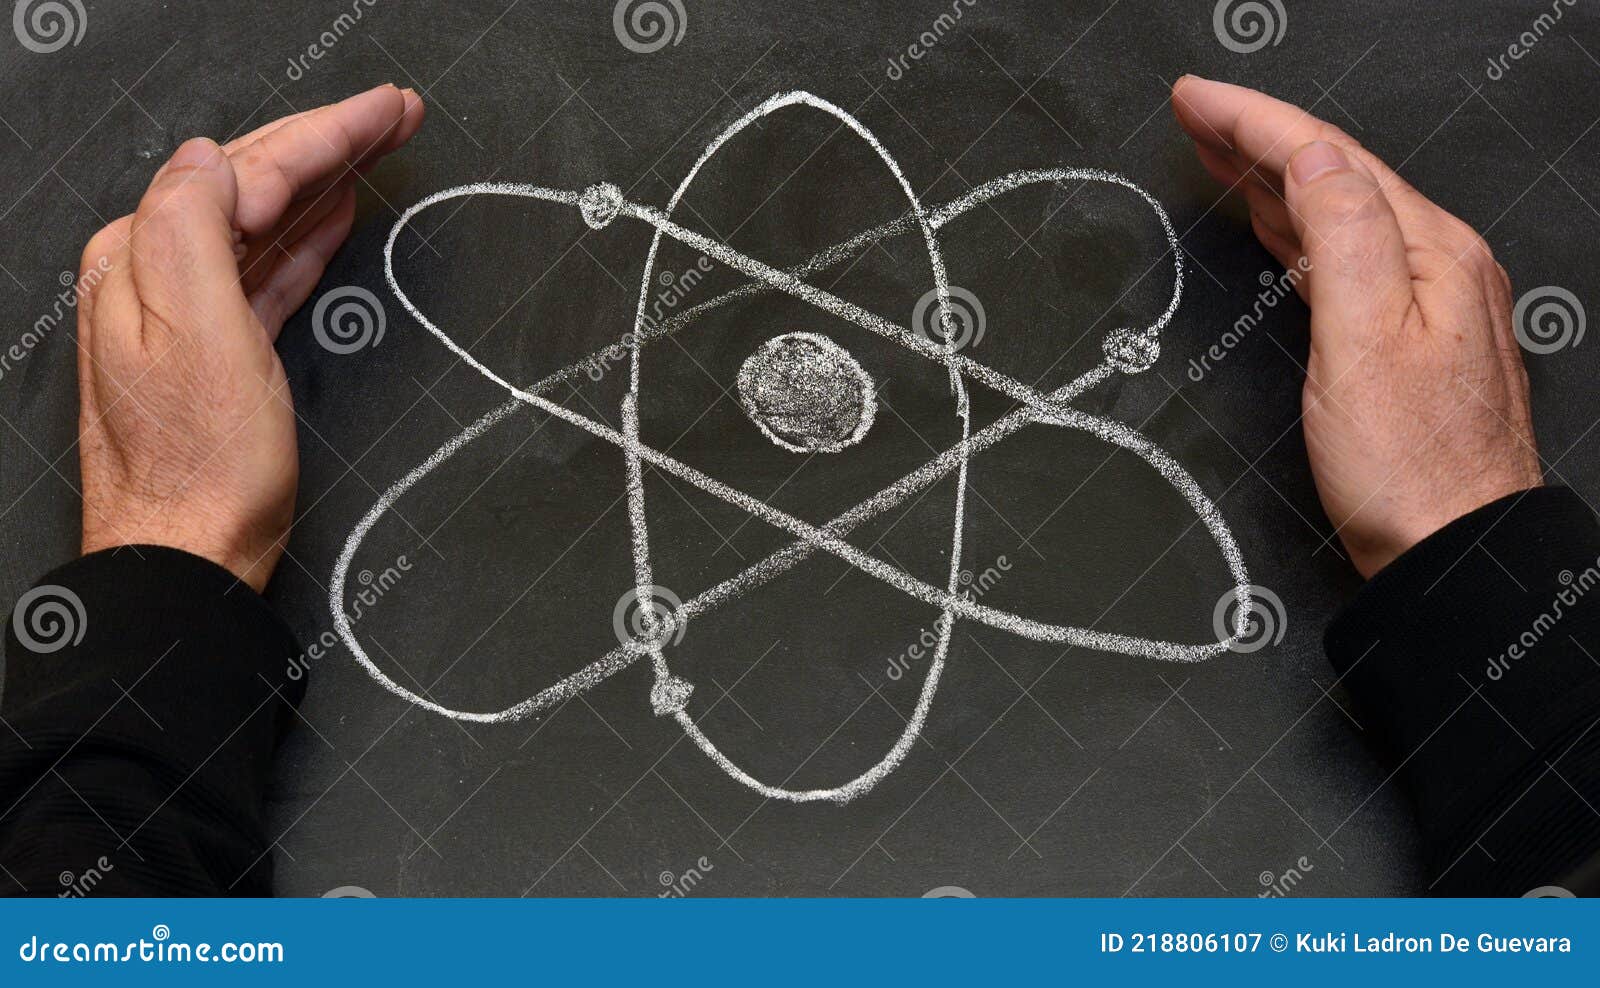 atom  drawn on a blackboard